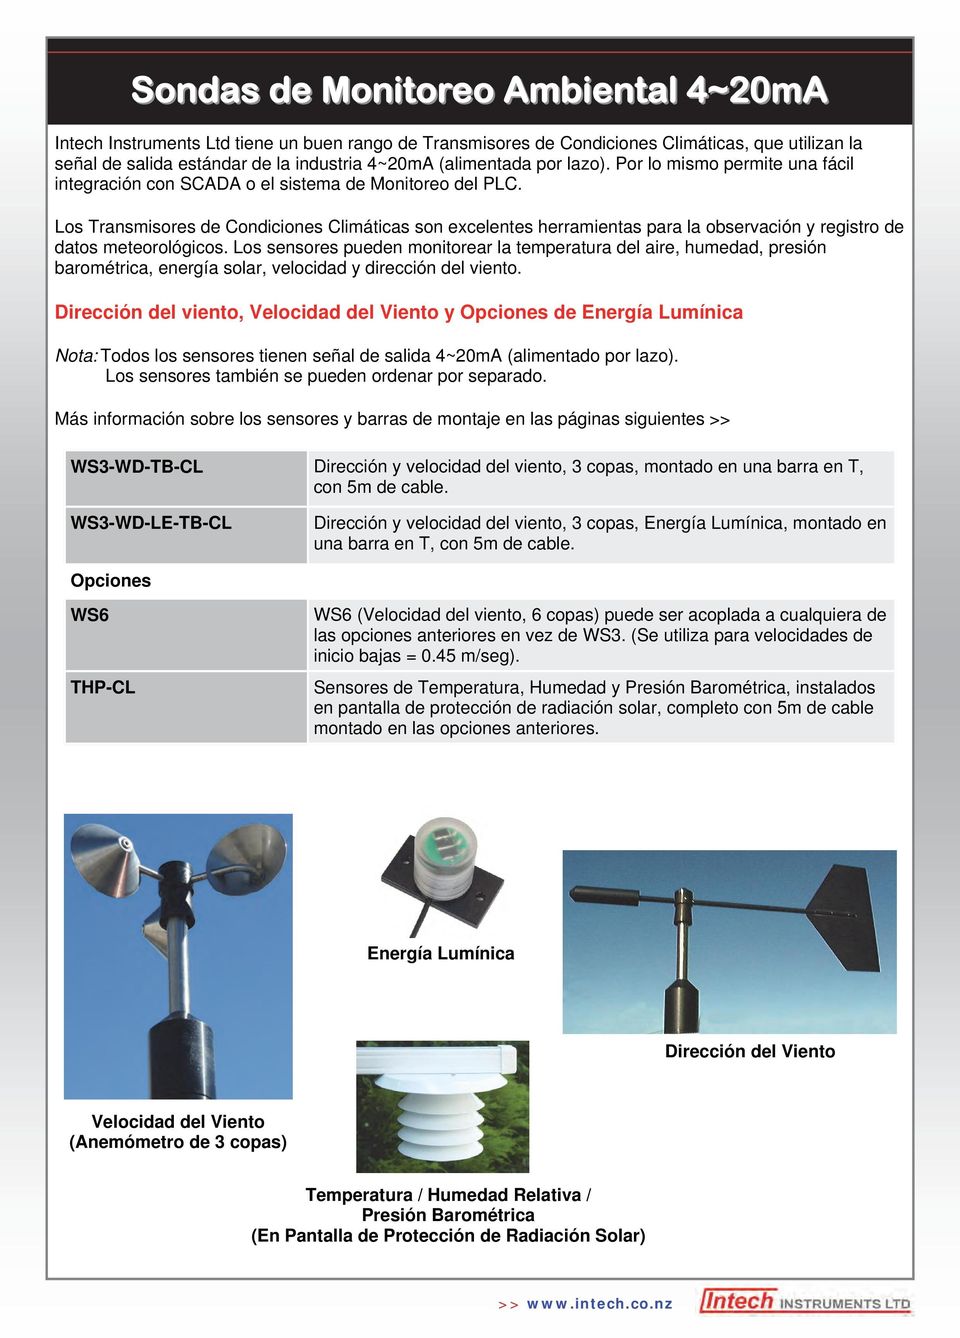 Los Transmisores de Condiciones Climáticas son excelentes herramientas para la observación y registro de datos meteorológicos.